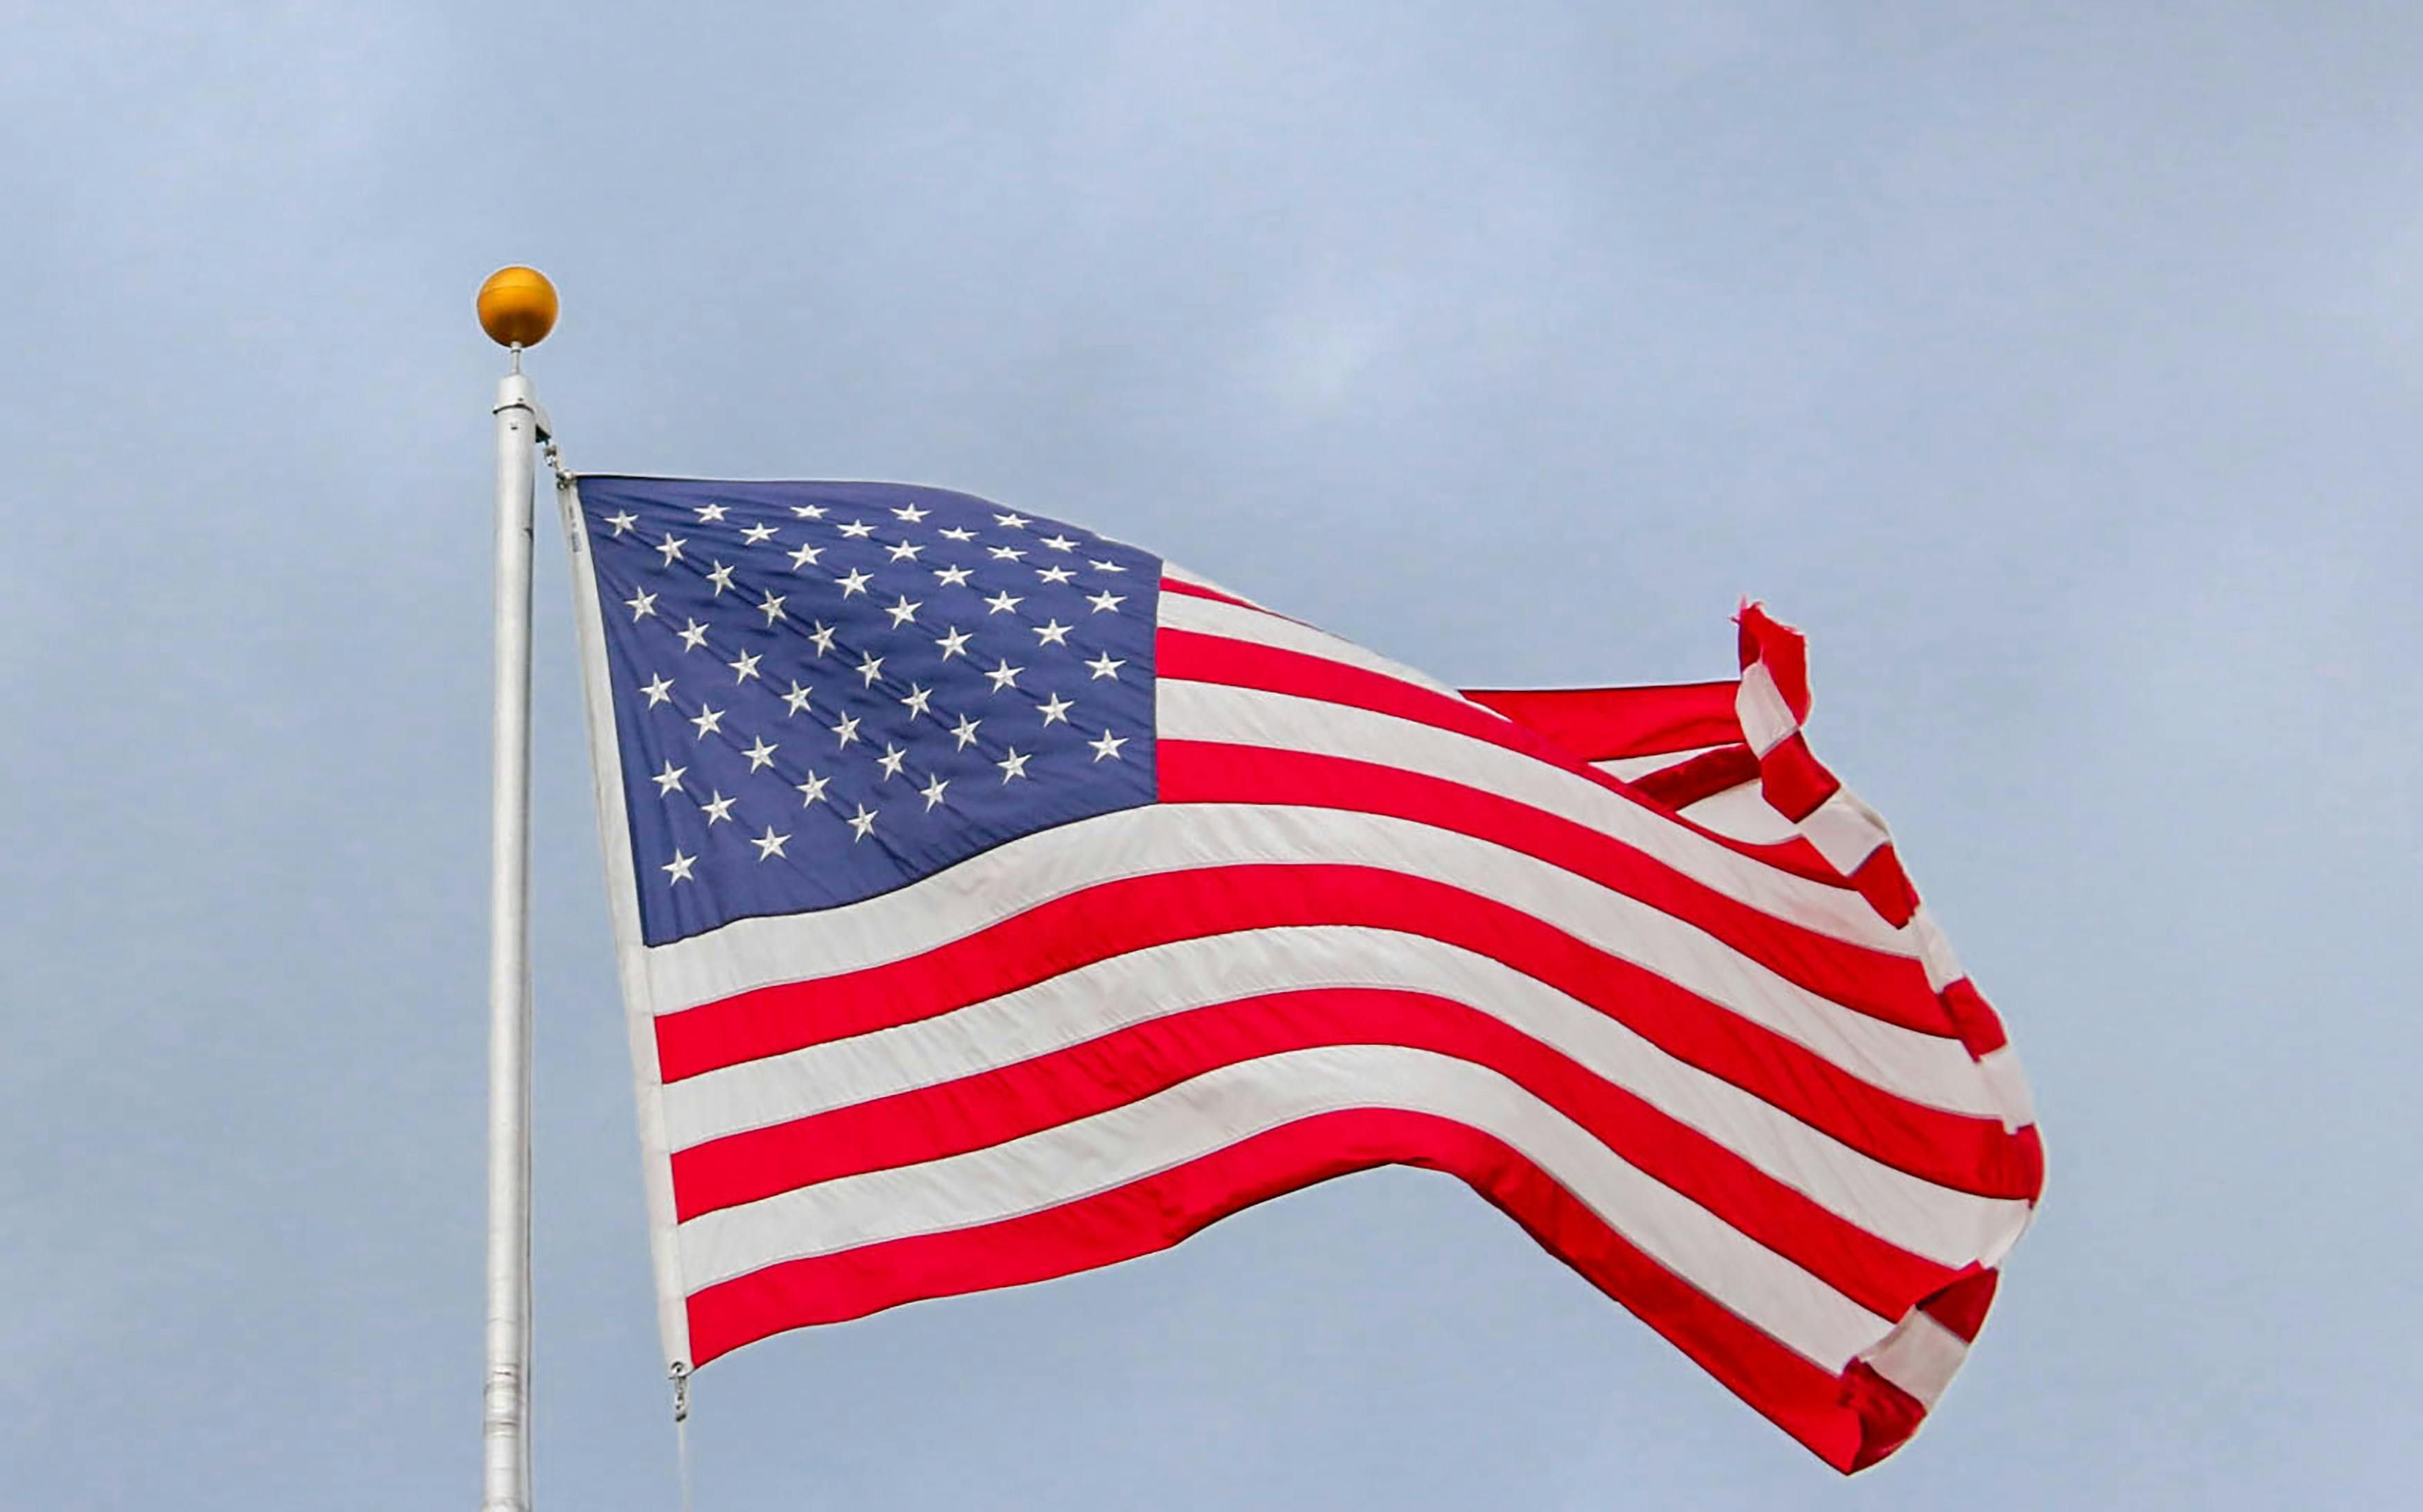 Bandera de Estados Unidos ondeando. Foto: Pexels/Element5 Digital